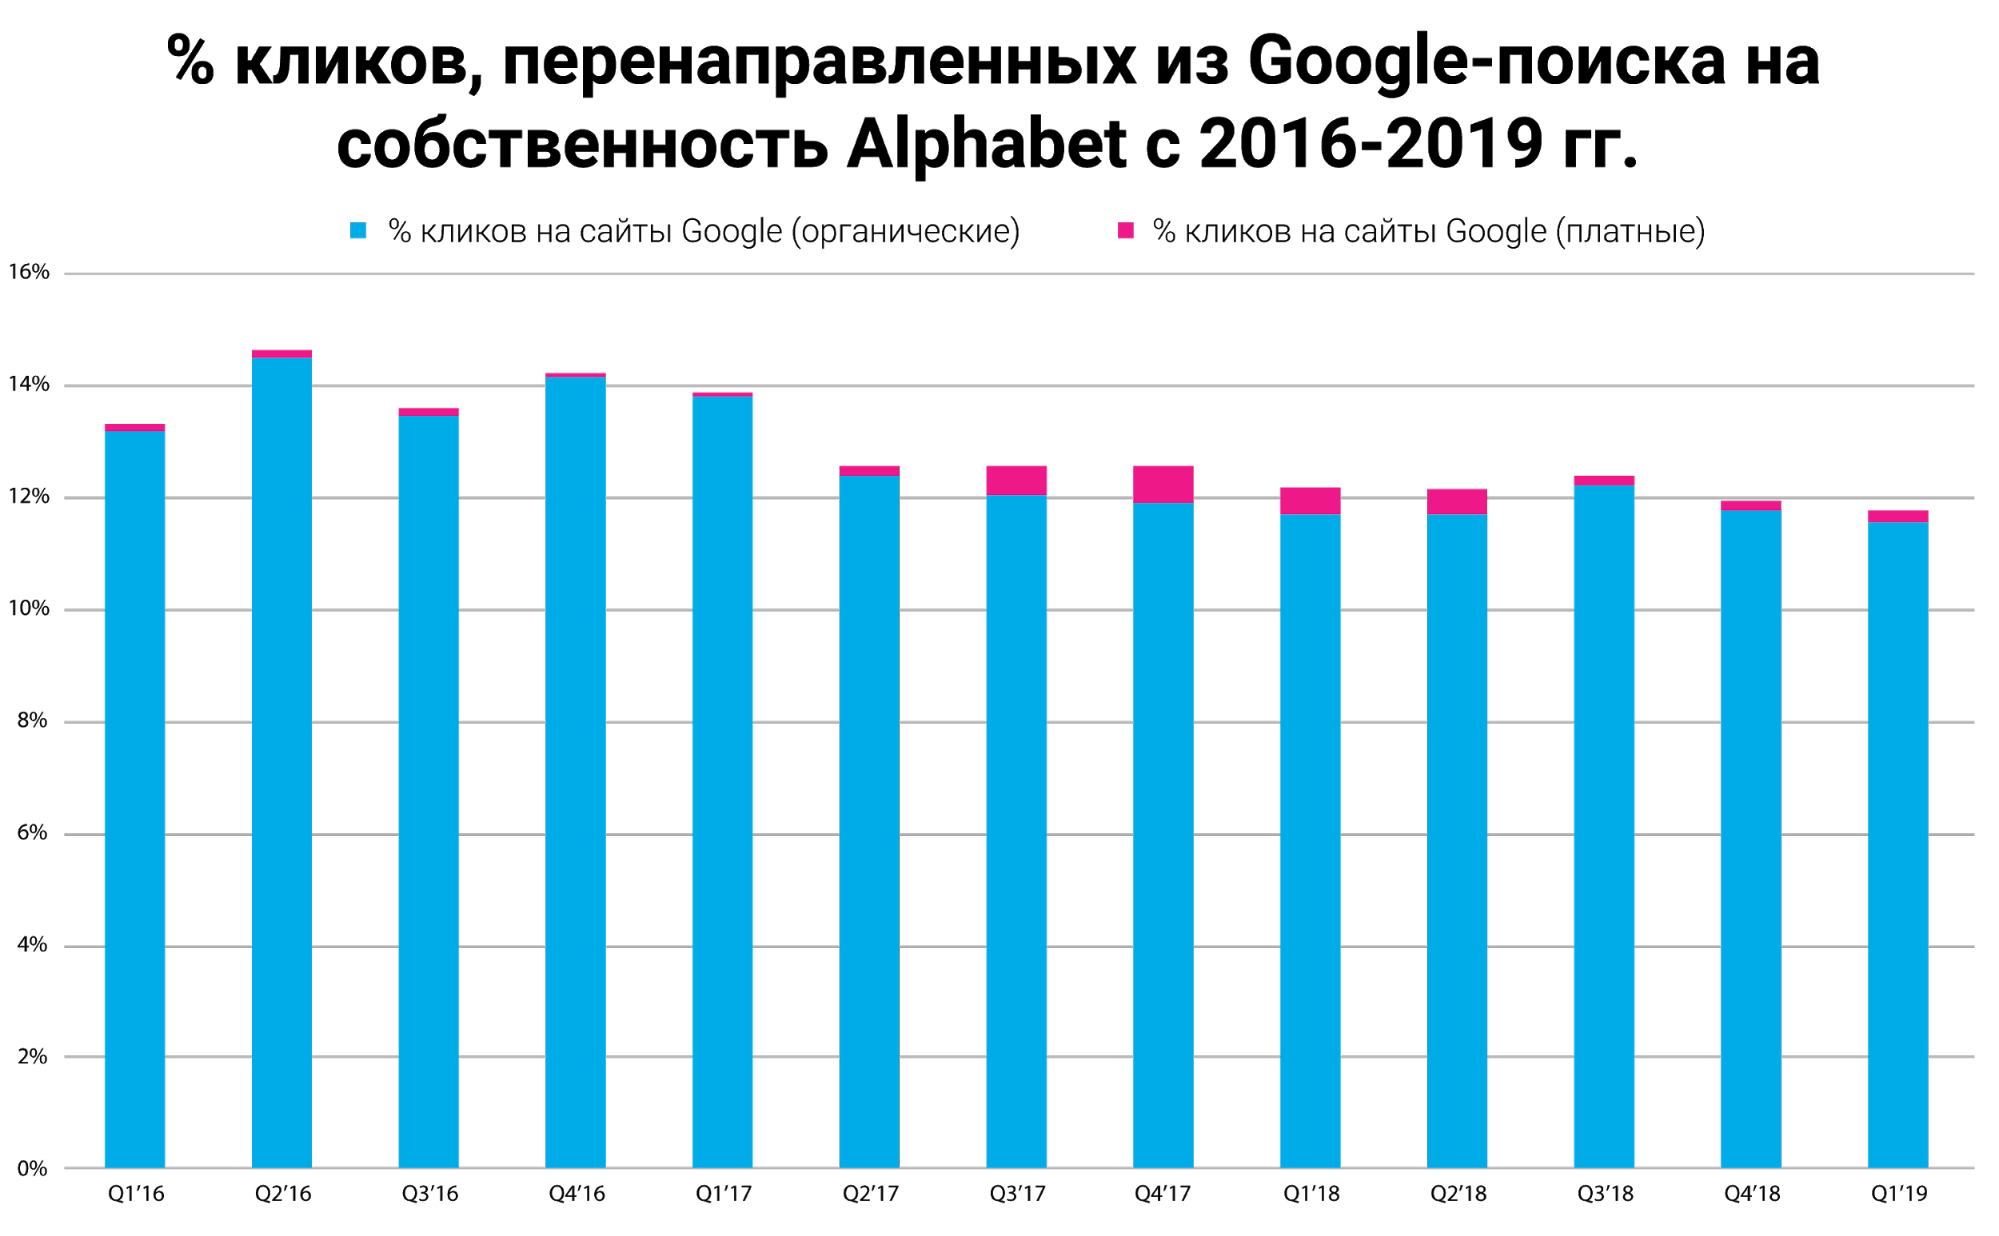 % кликов, перенаправленных из Гугл-поиска на собственность Alphabet с 2016-2019 гг